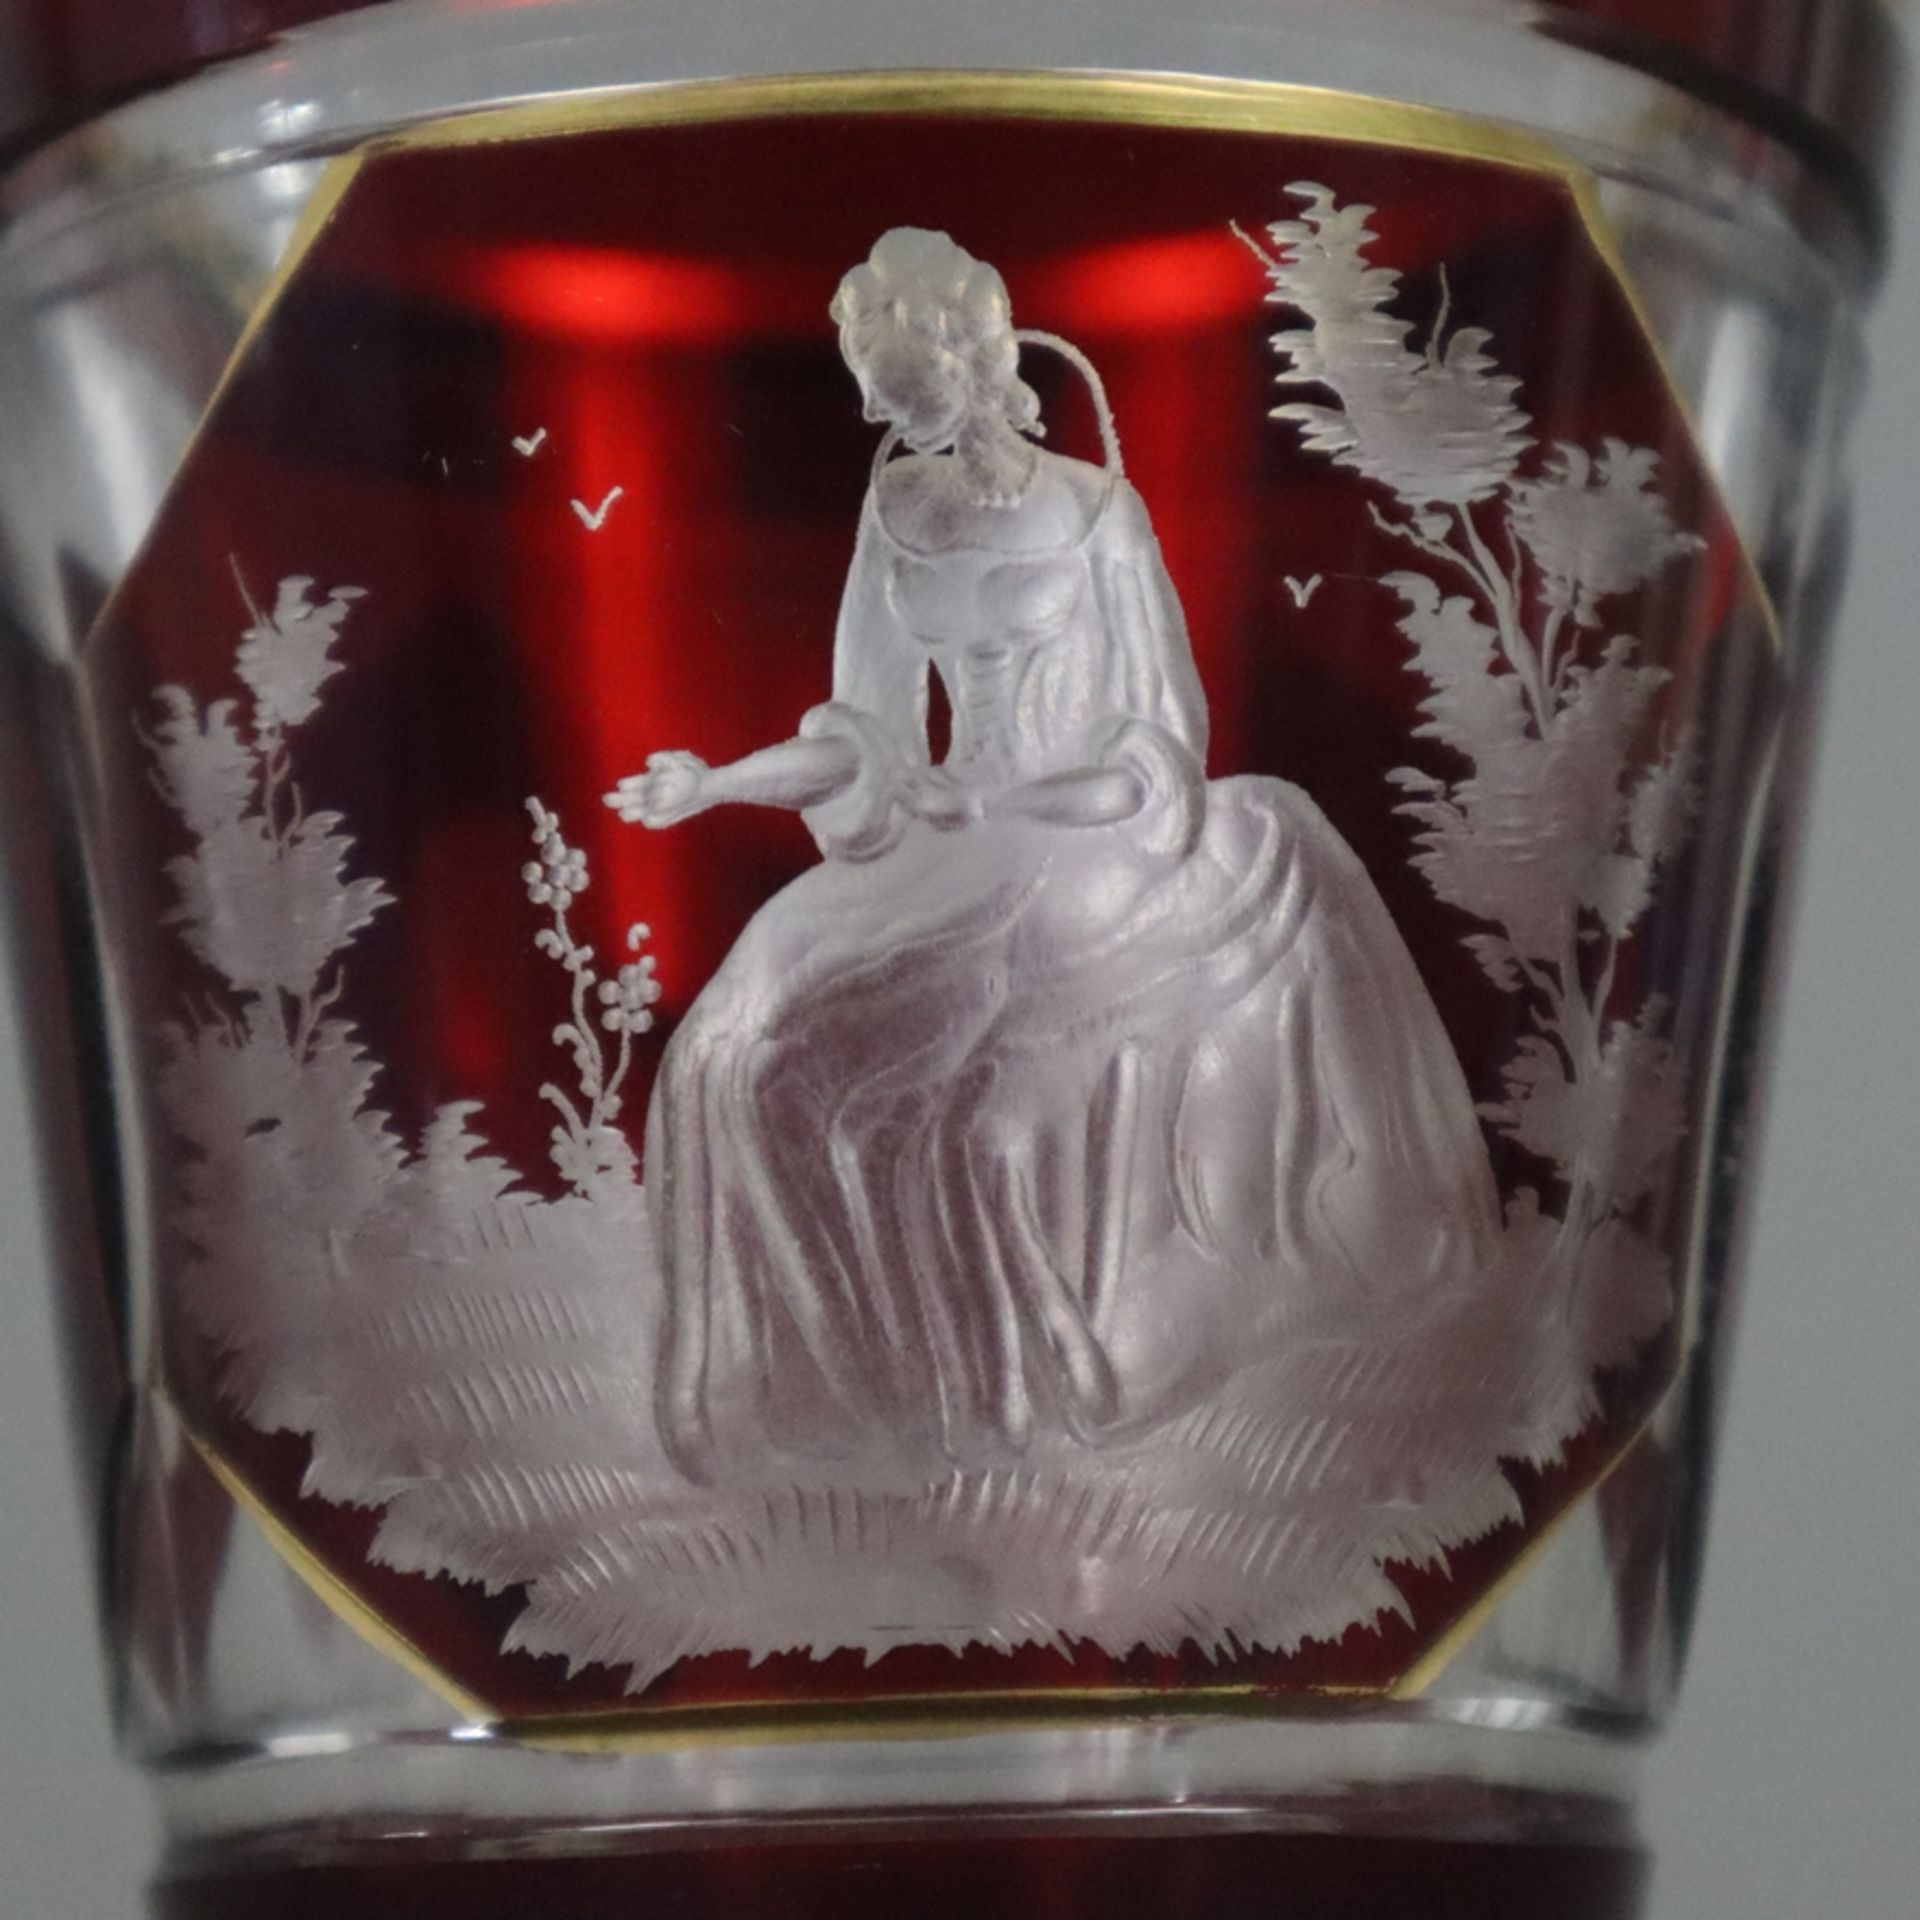 Ranftbecher - Böhmen 19. Jh., farbloses Glas, rot gebeizt, vergoldet, geschliffen, schauseitig Bild - Bild 2 aus 7